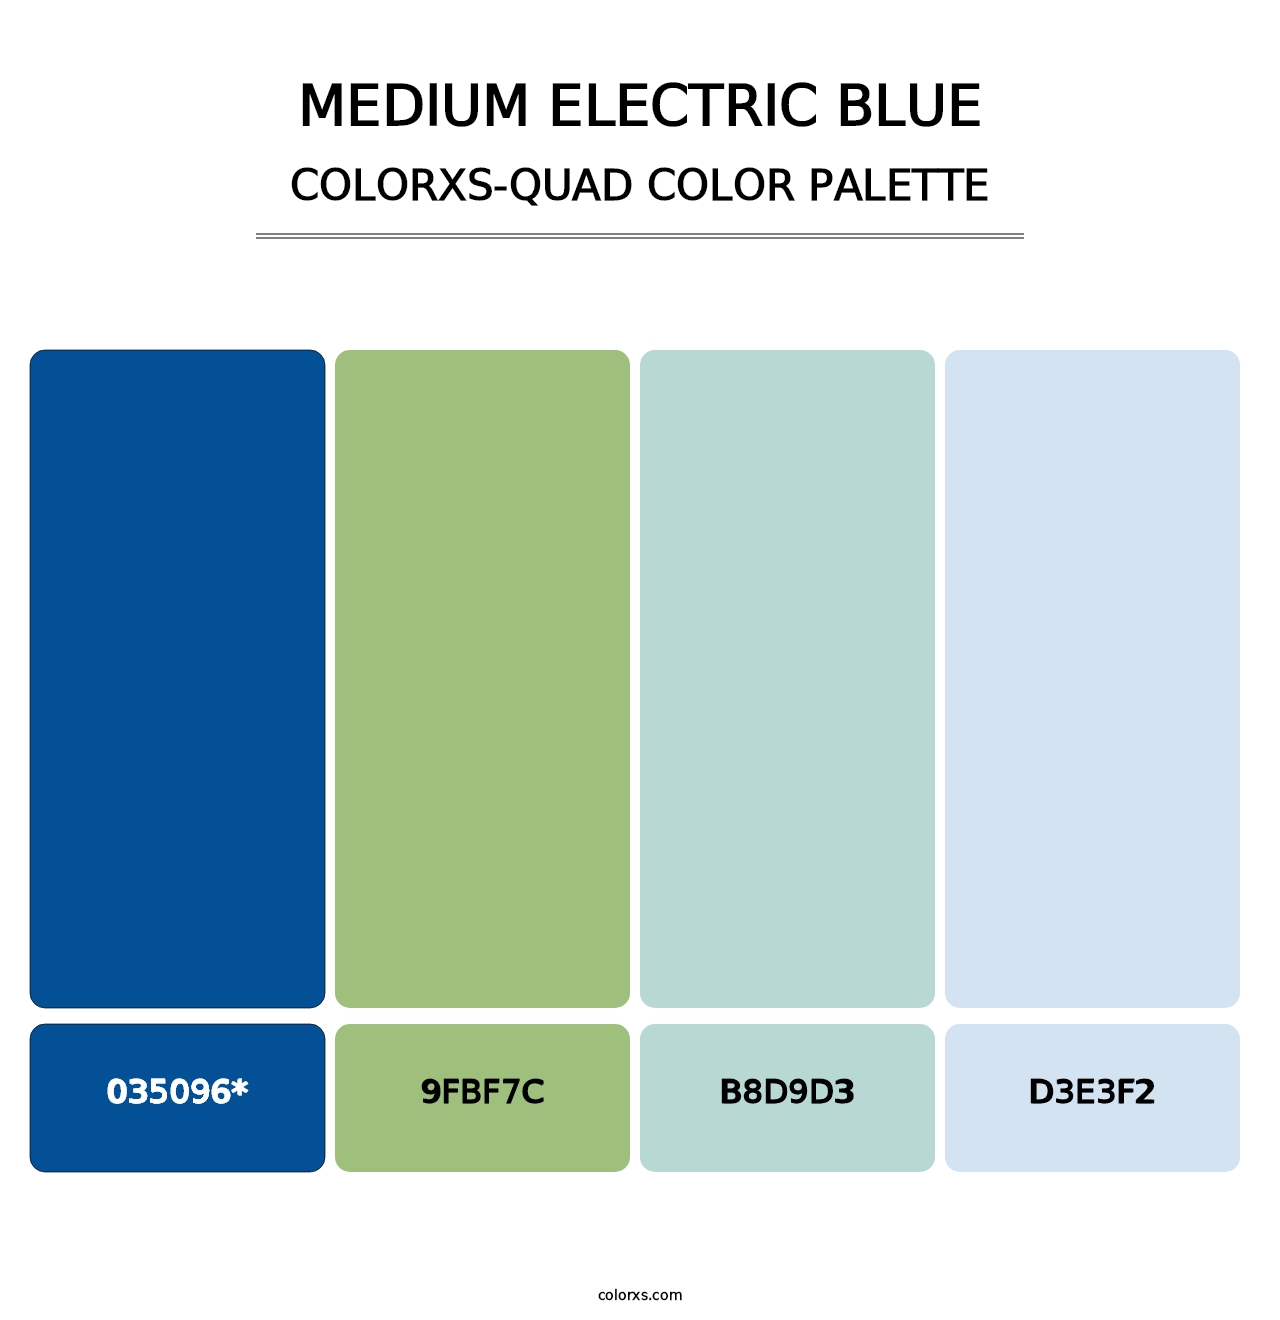 Medium Electric Blue - Colorxs Quad Palette